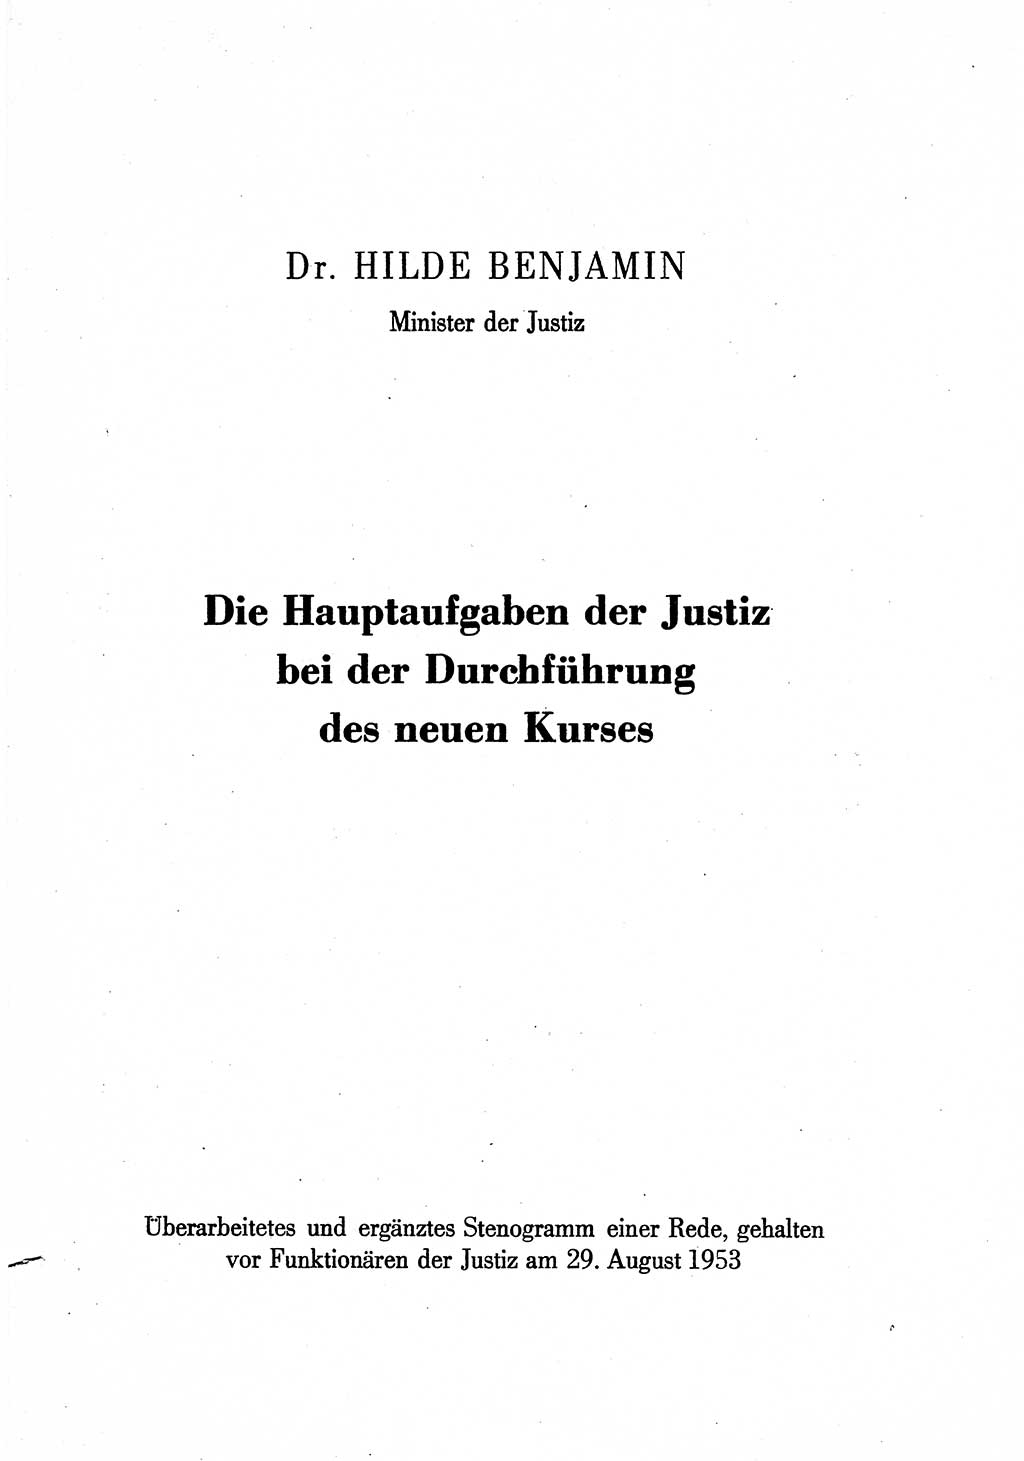 Hauptaufgaben der Justiz [Deutsche Demokratische Republik (DDR)] bei der Durchführung des neuen Kurses 1953, Seite 1 (Hpt.-Aufg. J. DDR 1953, S. 1)